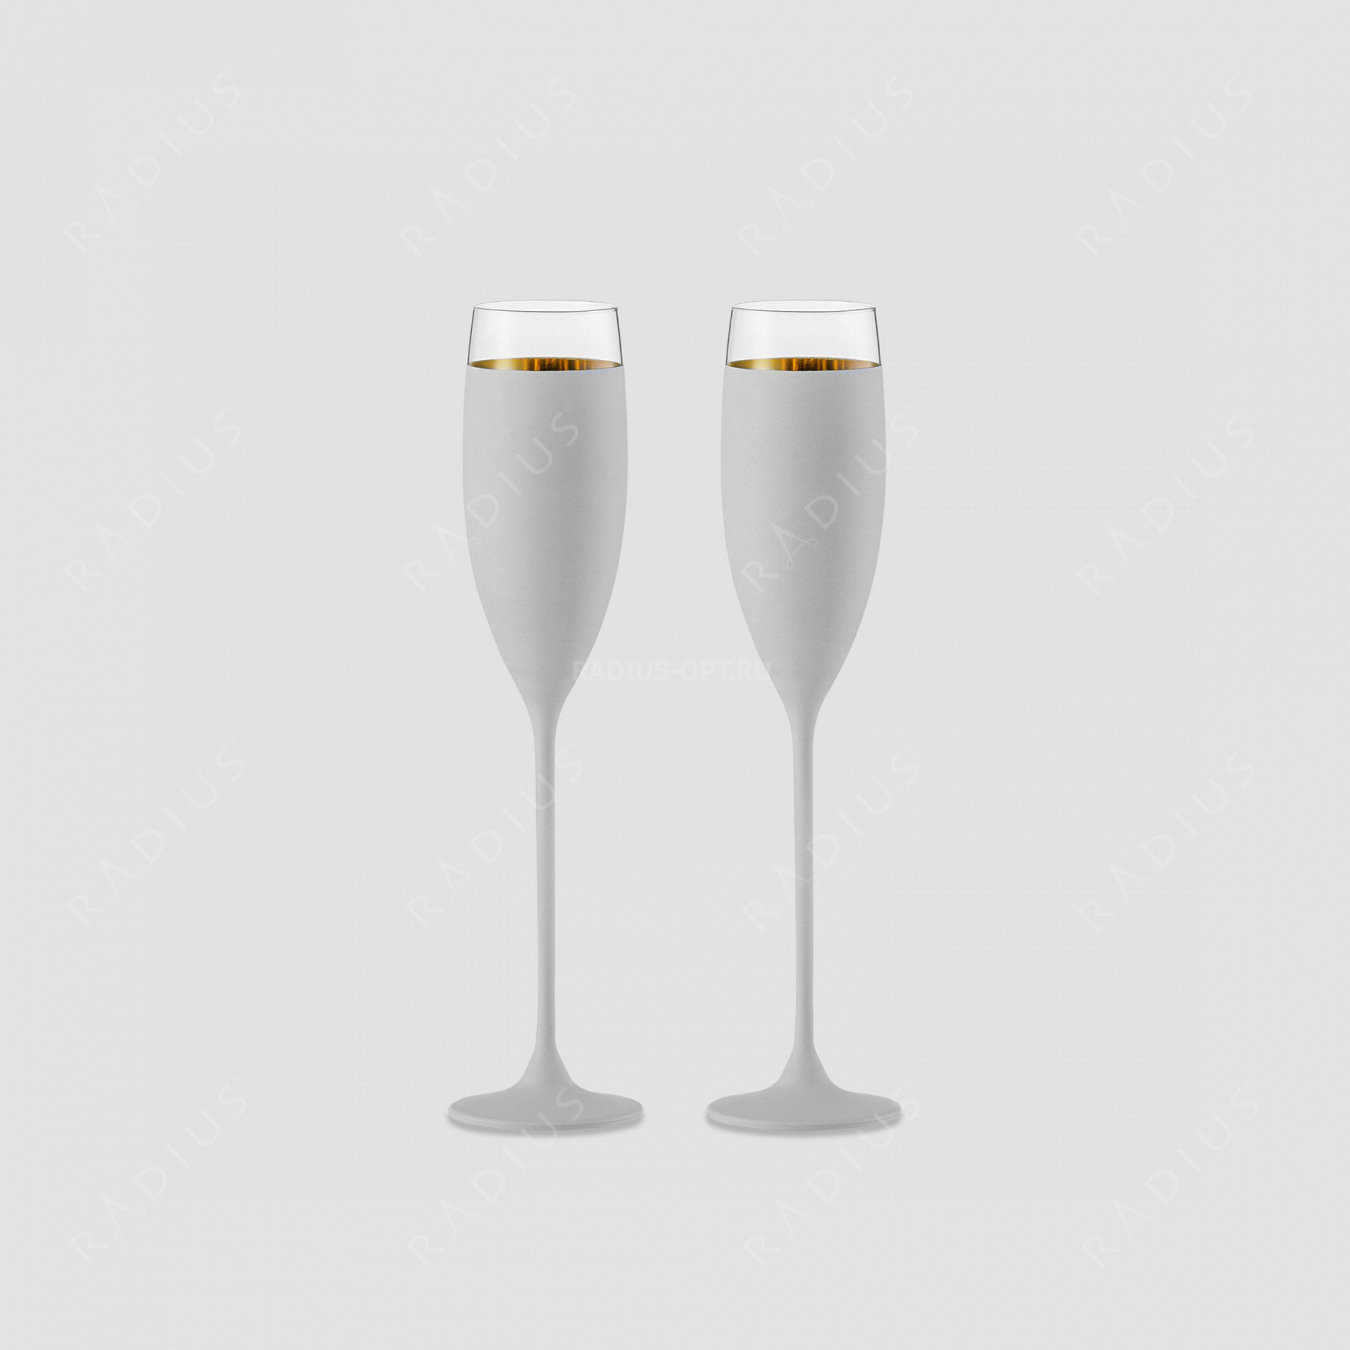 Набор из 2-х хрустальных бокалов для шампанского, объем: 180 мл, материал: бессвинцовый хрусталь, цвет: белый/золото, серия Champagner Exklusiv, EISCH, Германия